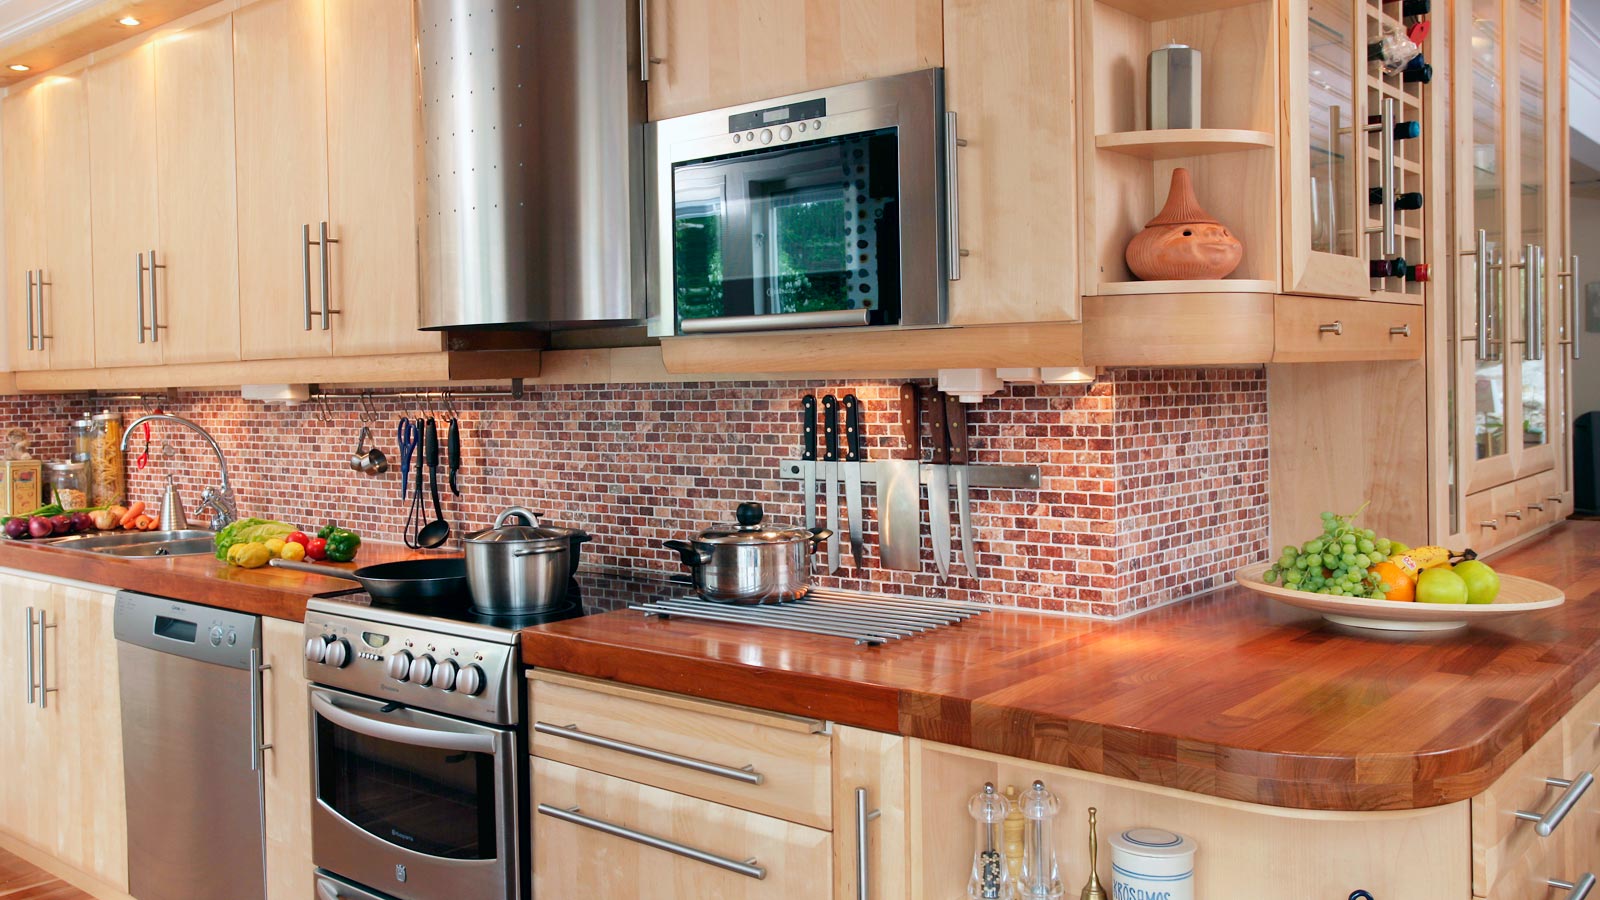 Nya köksluckor hittar du på Smartkök till ett bra pris. Exempelbild på ett lantligt kök i ljust trä med stilrena handdtag och fasade luckor. Kakel med små rektangulära rutor som går i bruna/mörkröda toner, och en bänkskiva i massivt trä.